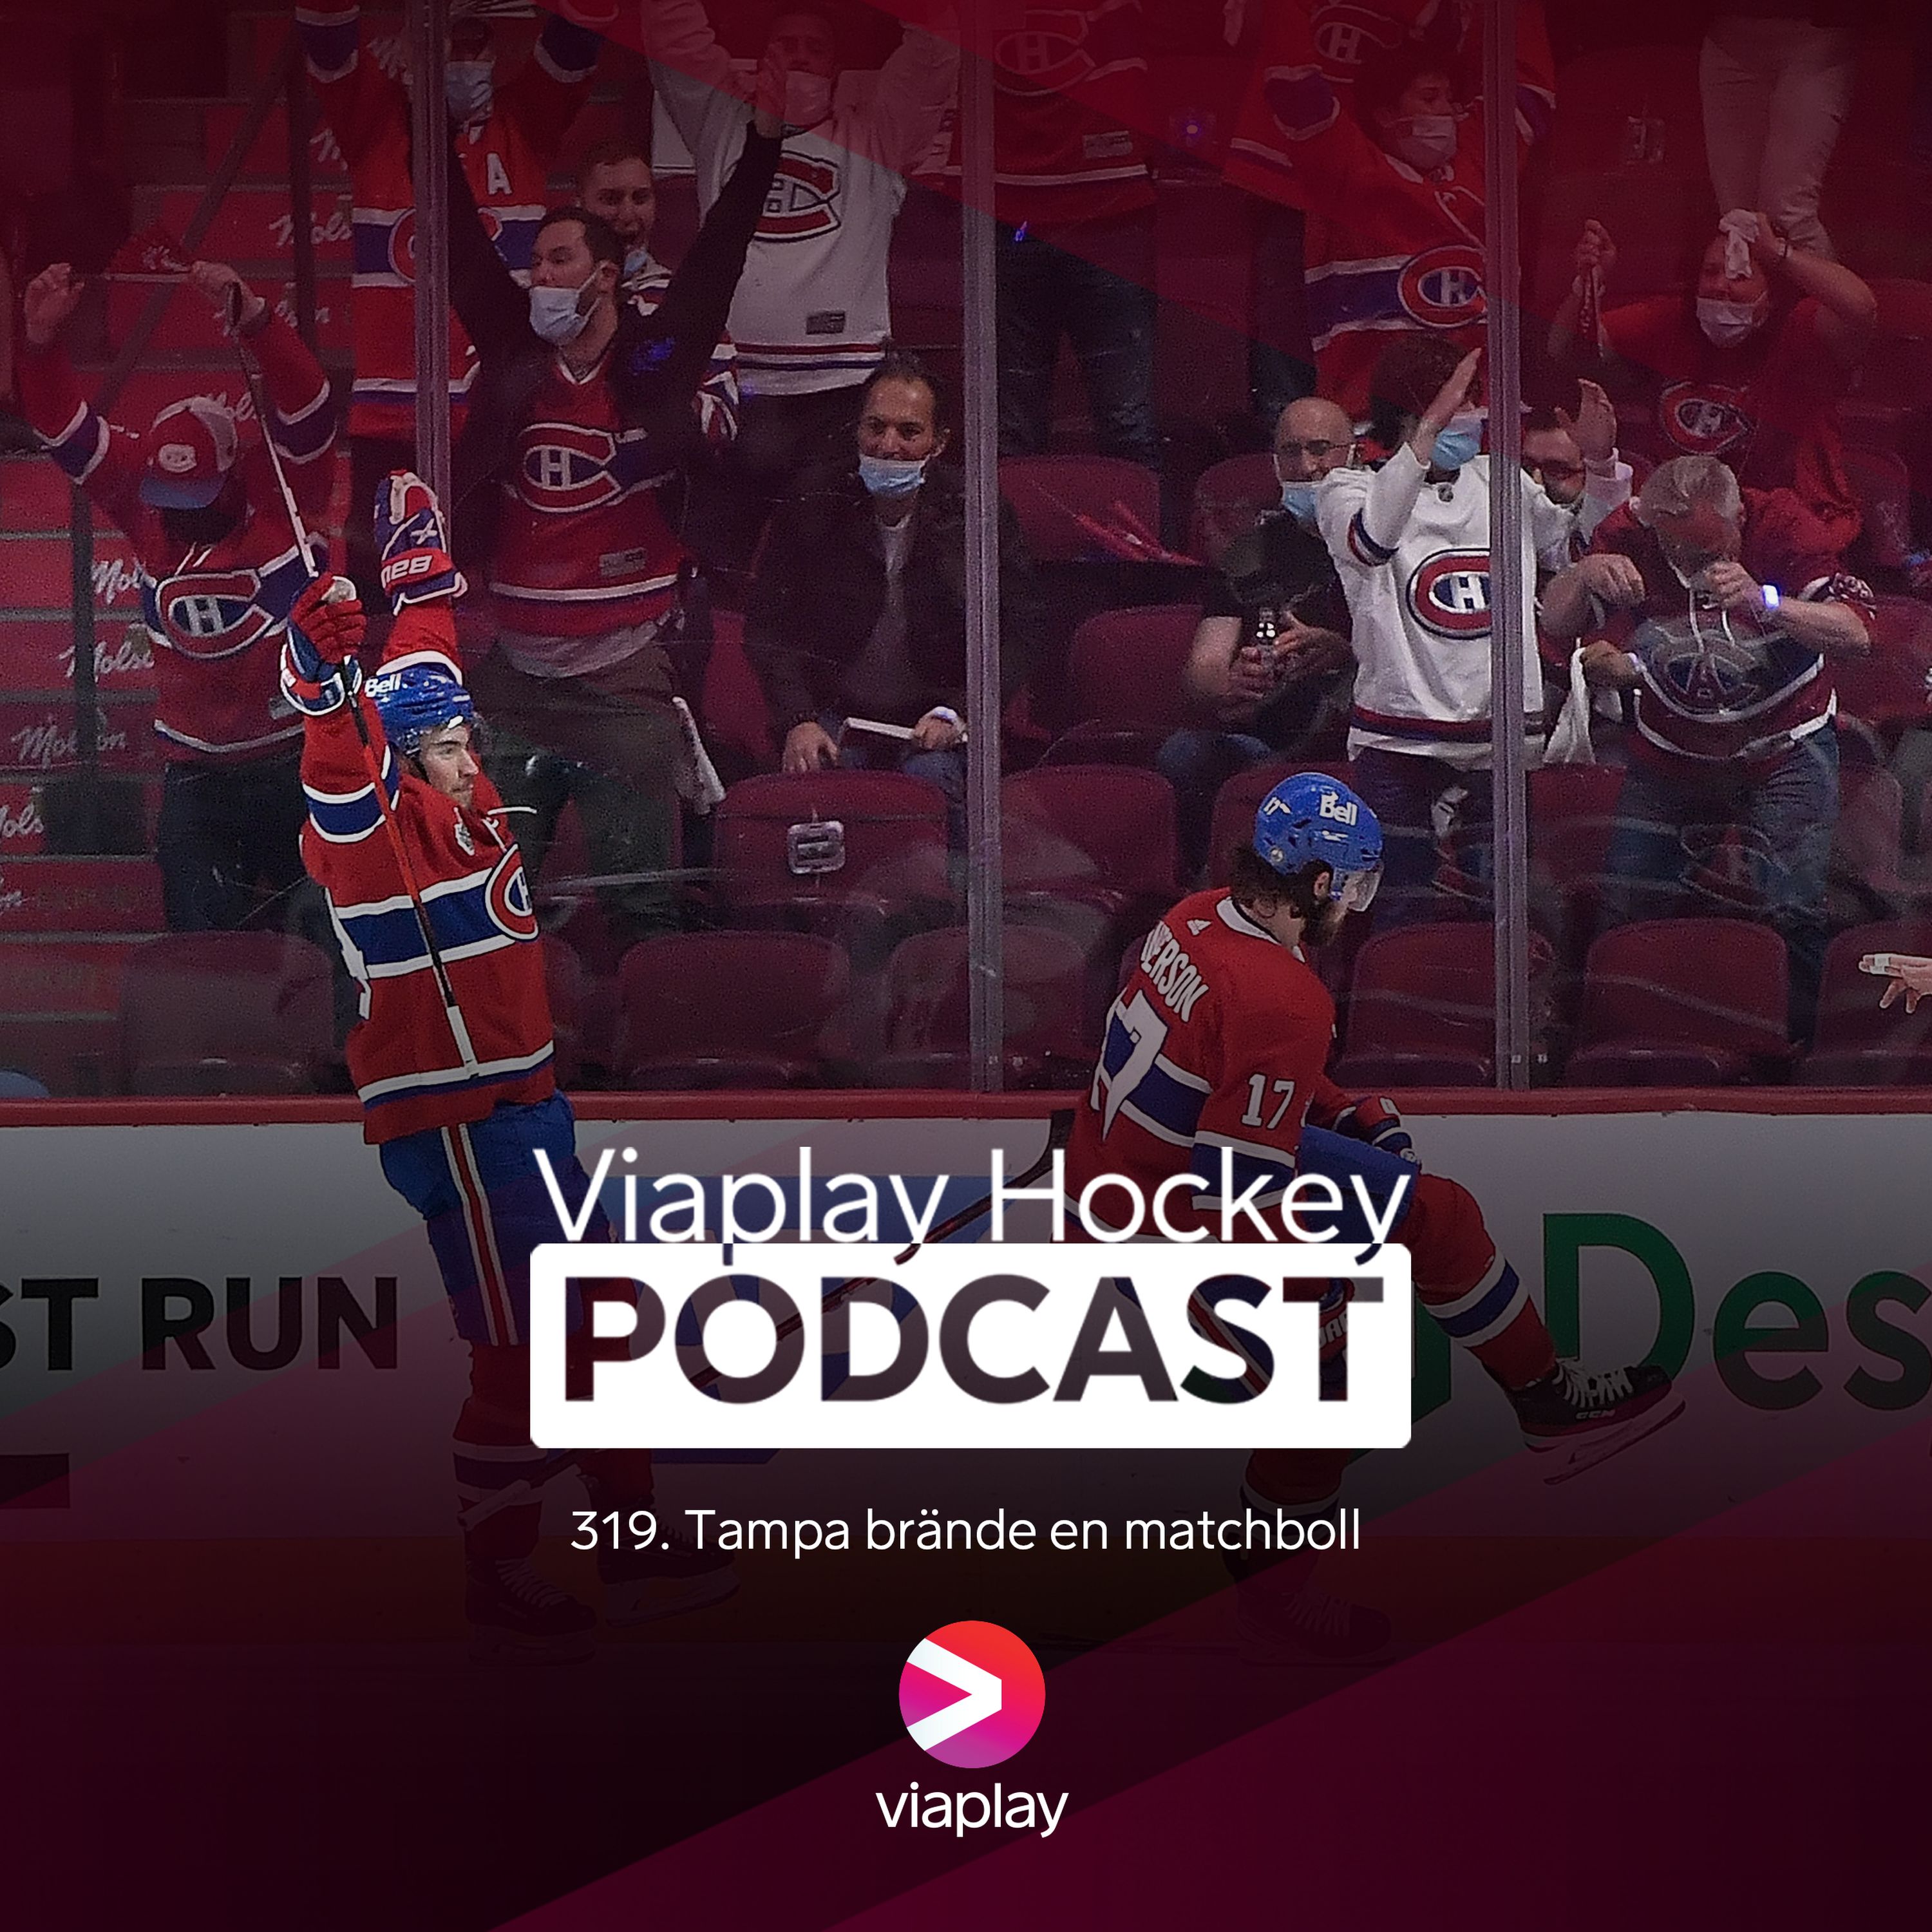 319. Viaplay Hockey Podcast - Tampa brände en matchboll.